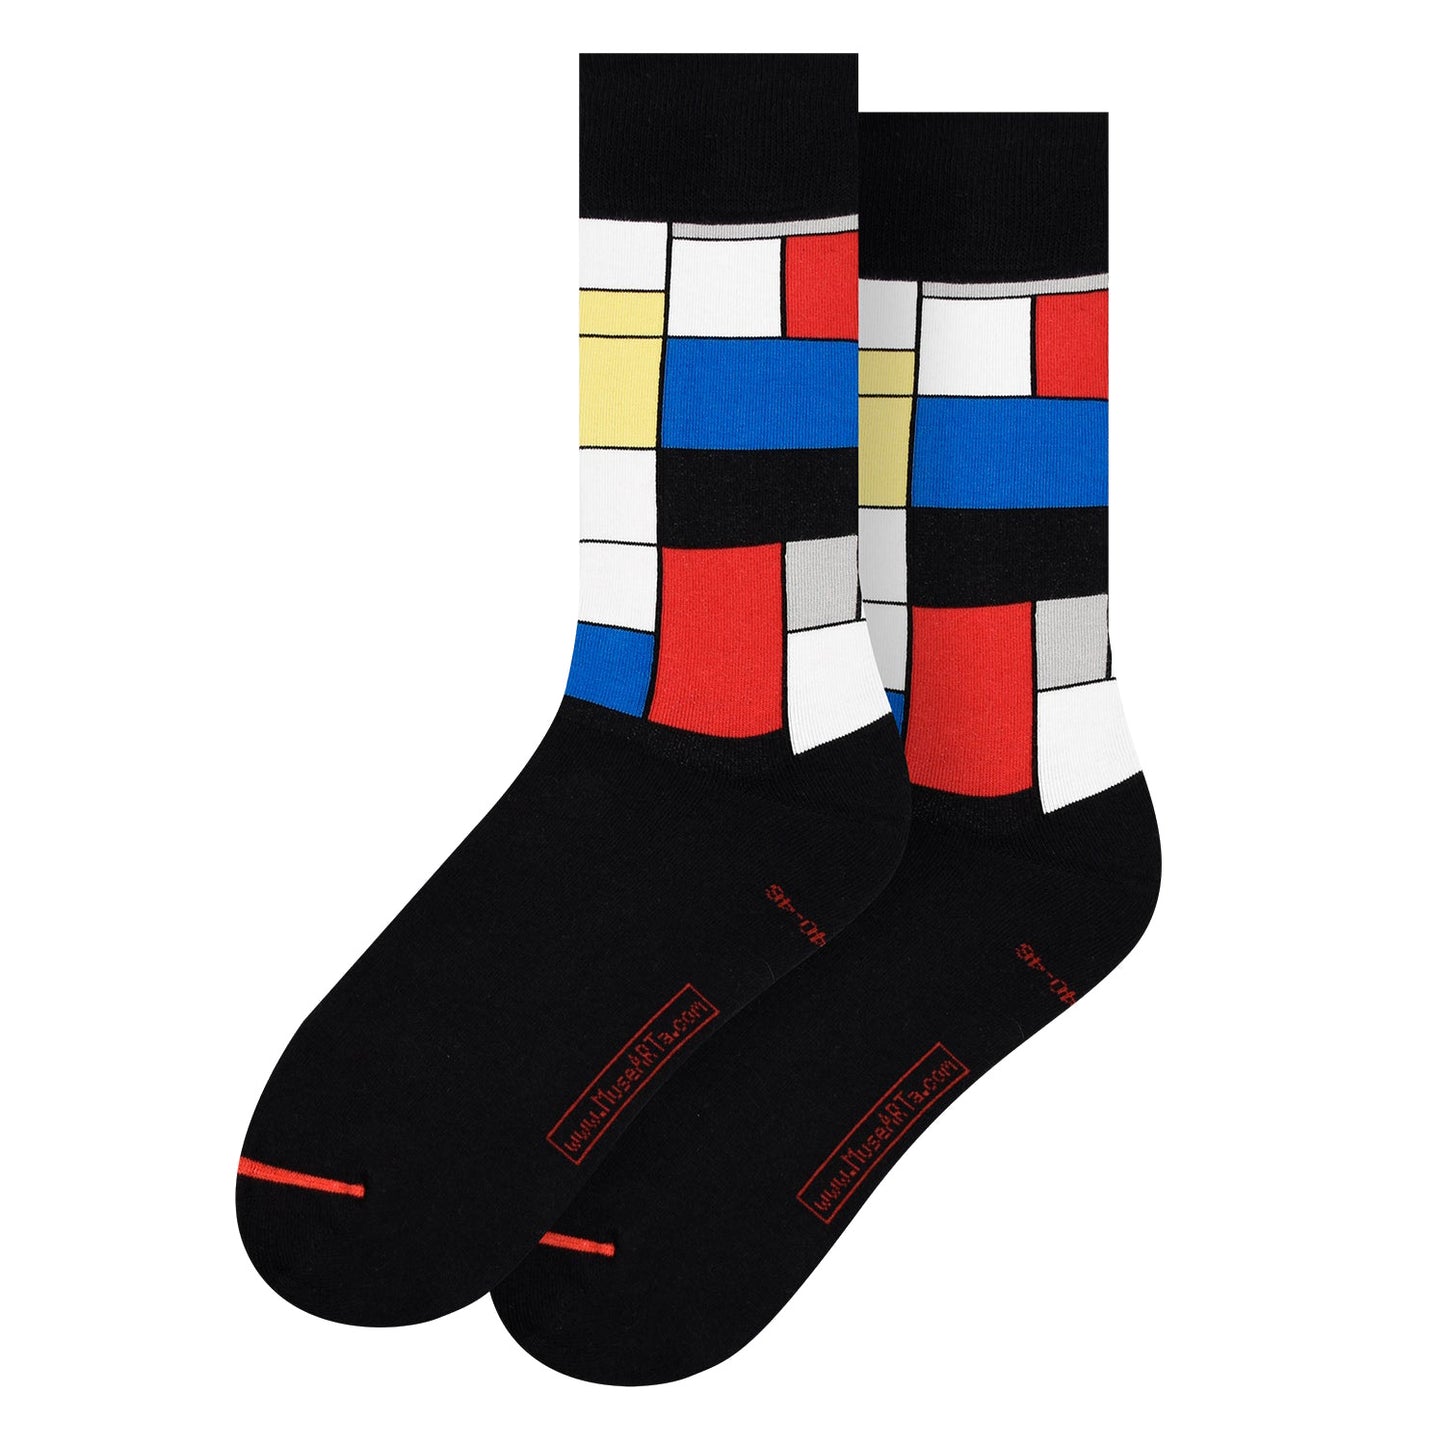 Mondrians Komposition mit roten, blauen und gelben Socken